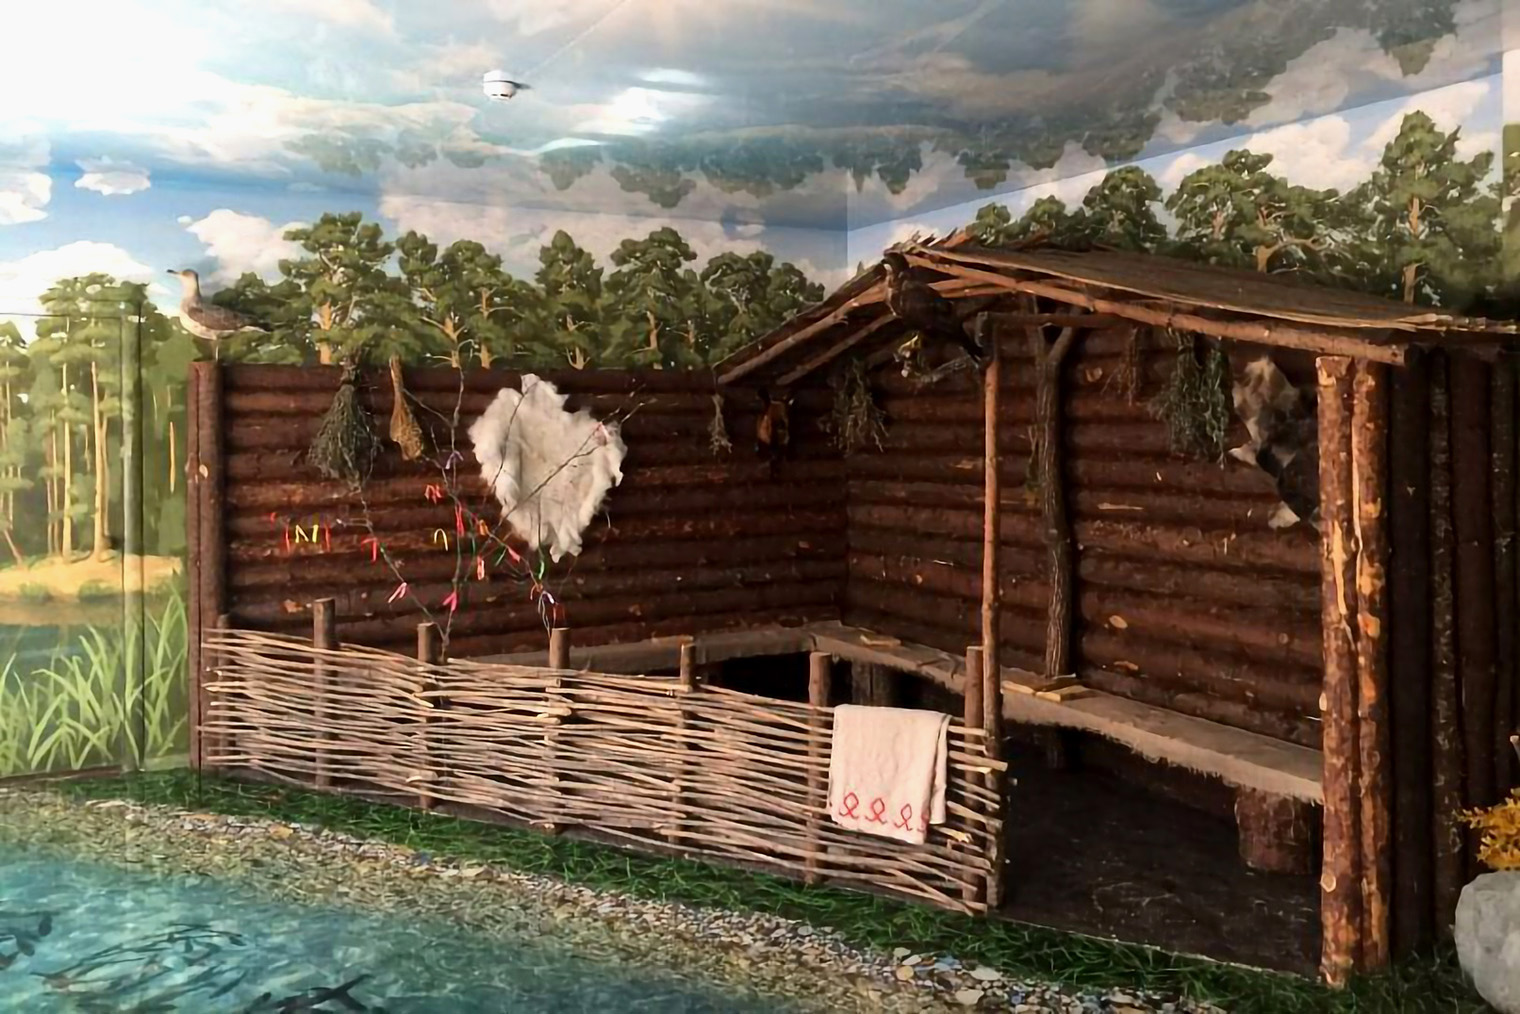 Так выглядели постройки первых жителей ростовской земли — мерян. Источник: russkoe-podvorie.ru